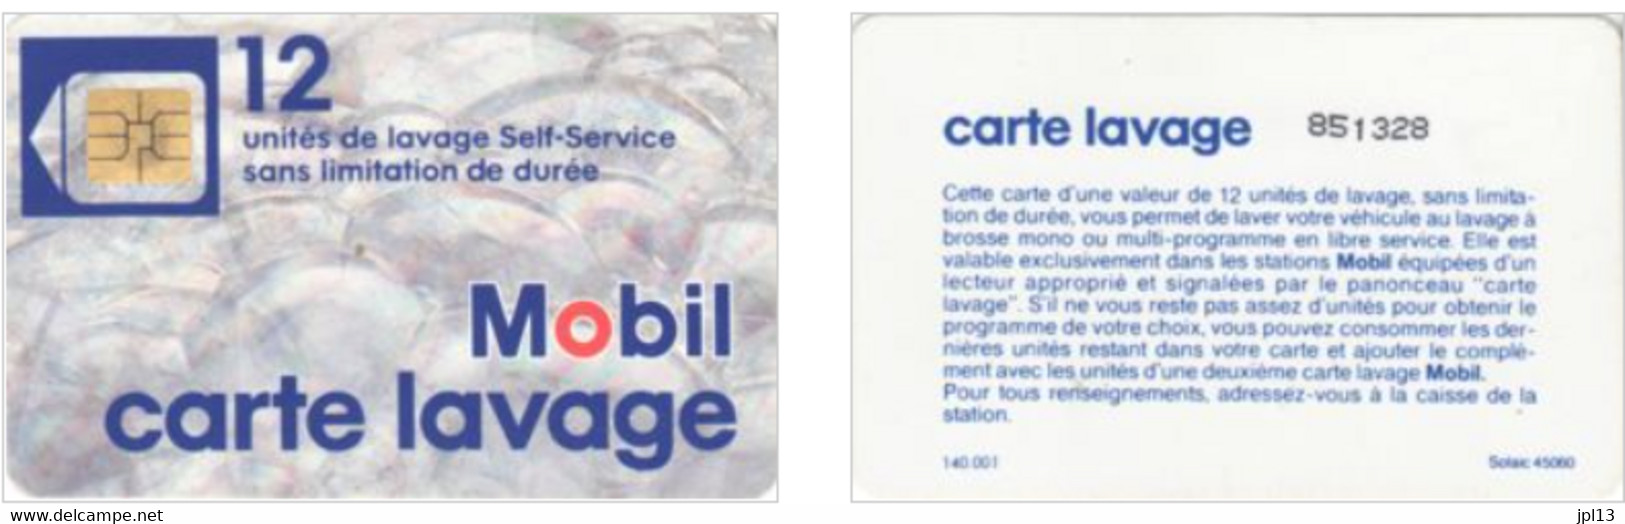 Carte Lavage - France - Mobil - 12 Unités De Lavage - Photo 2 - Car-wash